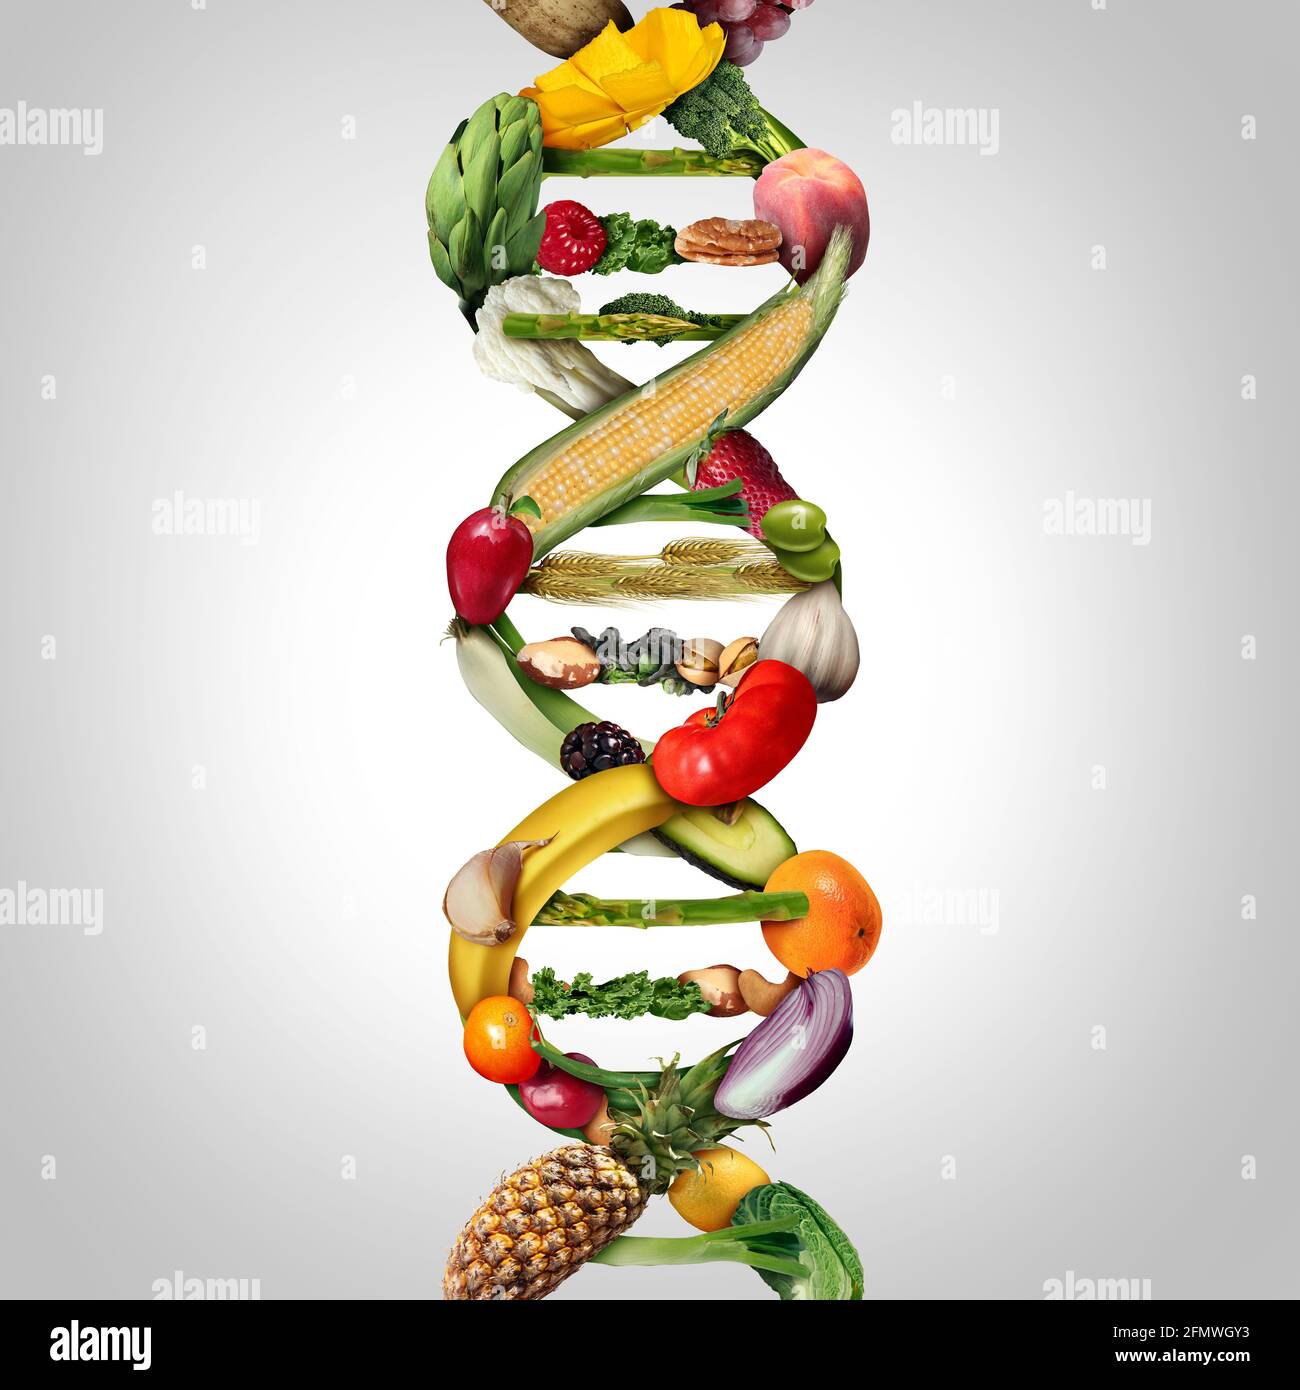 OGM alimentation et cultures génétiquement modifiées ou concept d'agriculture technique utilisant la biotechnologie et la manipulation génétique par la biologie. Banque D'Images